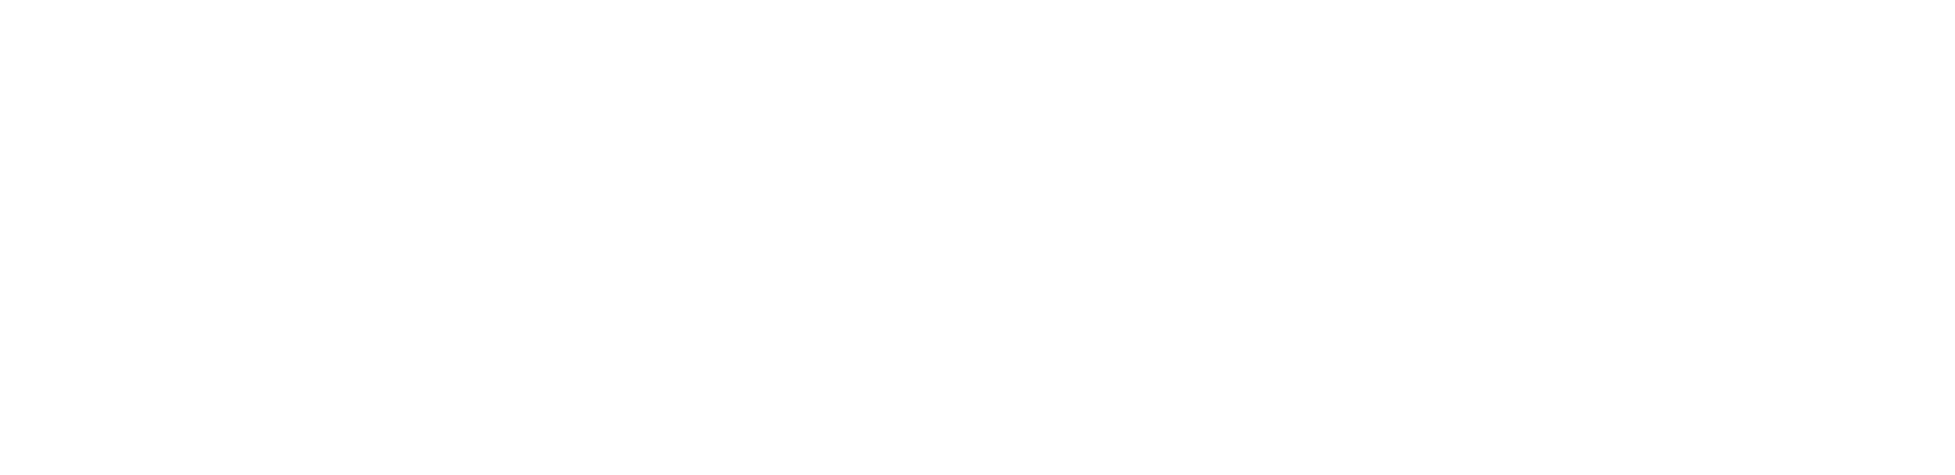 booze-ng-logo-w